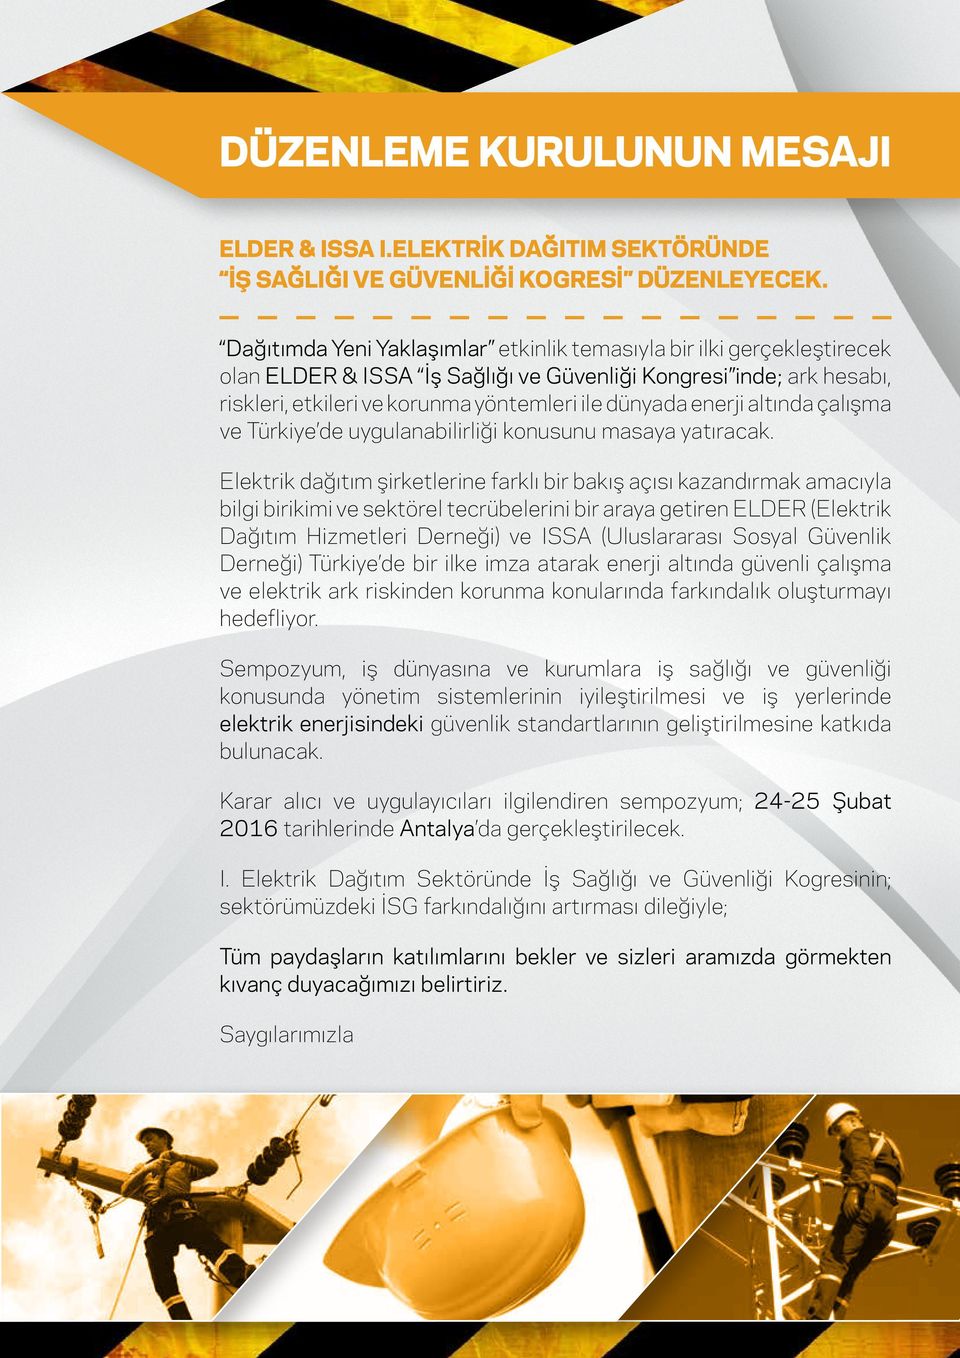 enerji altında çalışma ve Türkiye de uygulanabilirliği konusunu masaya yatıracak.